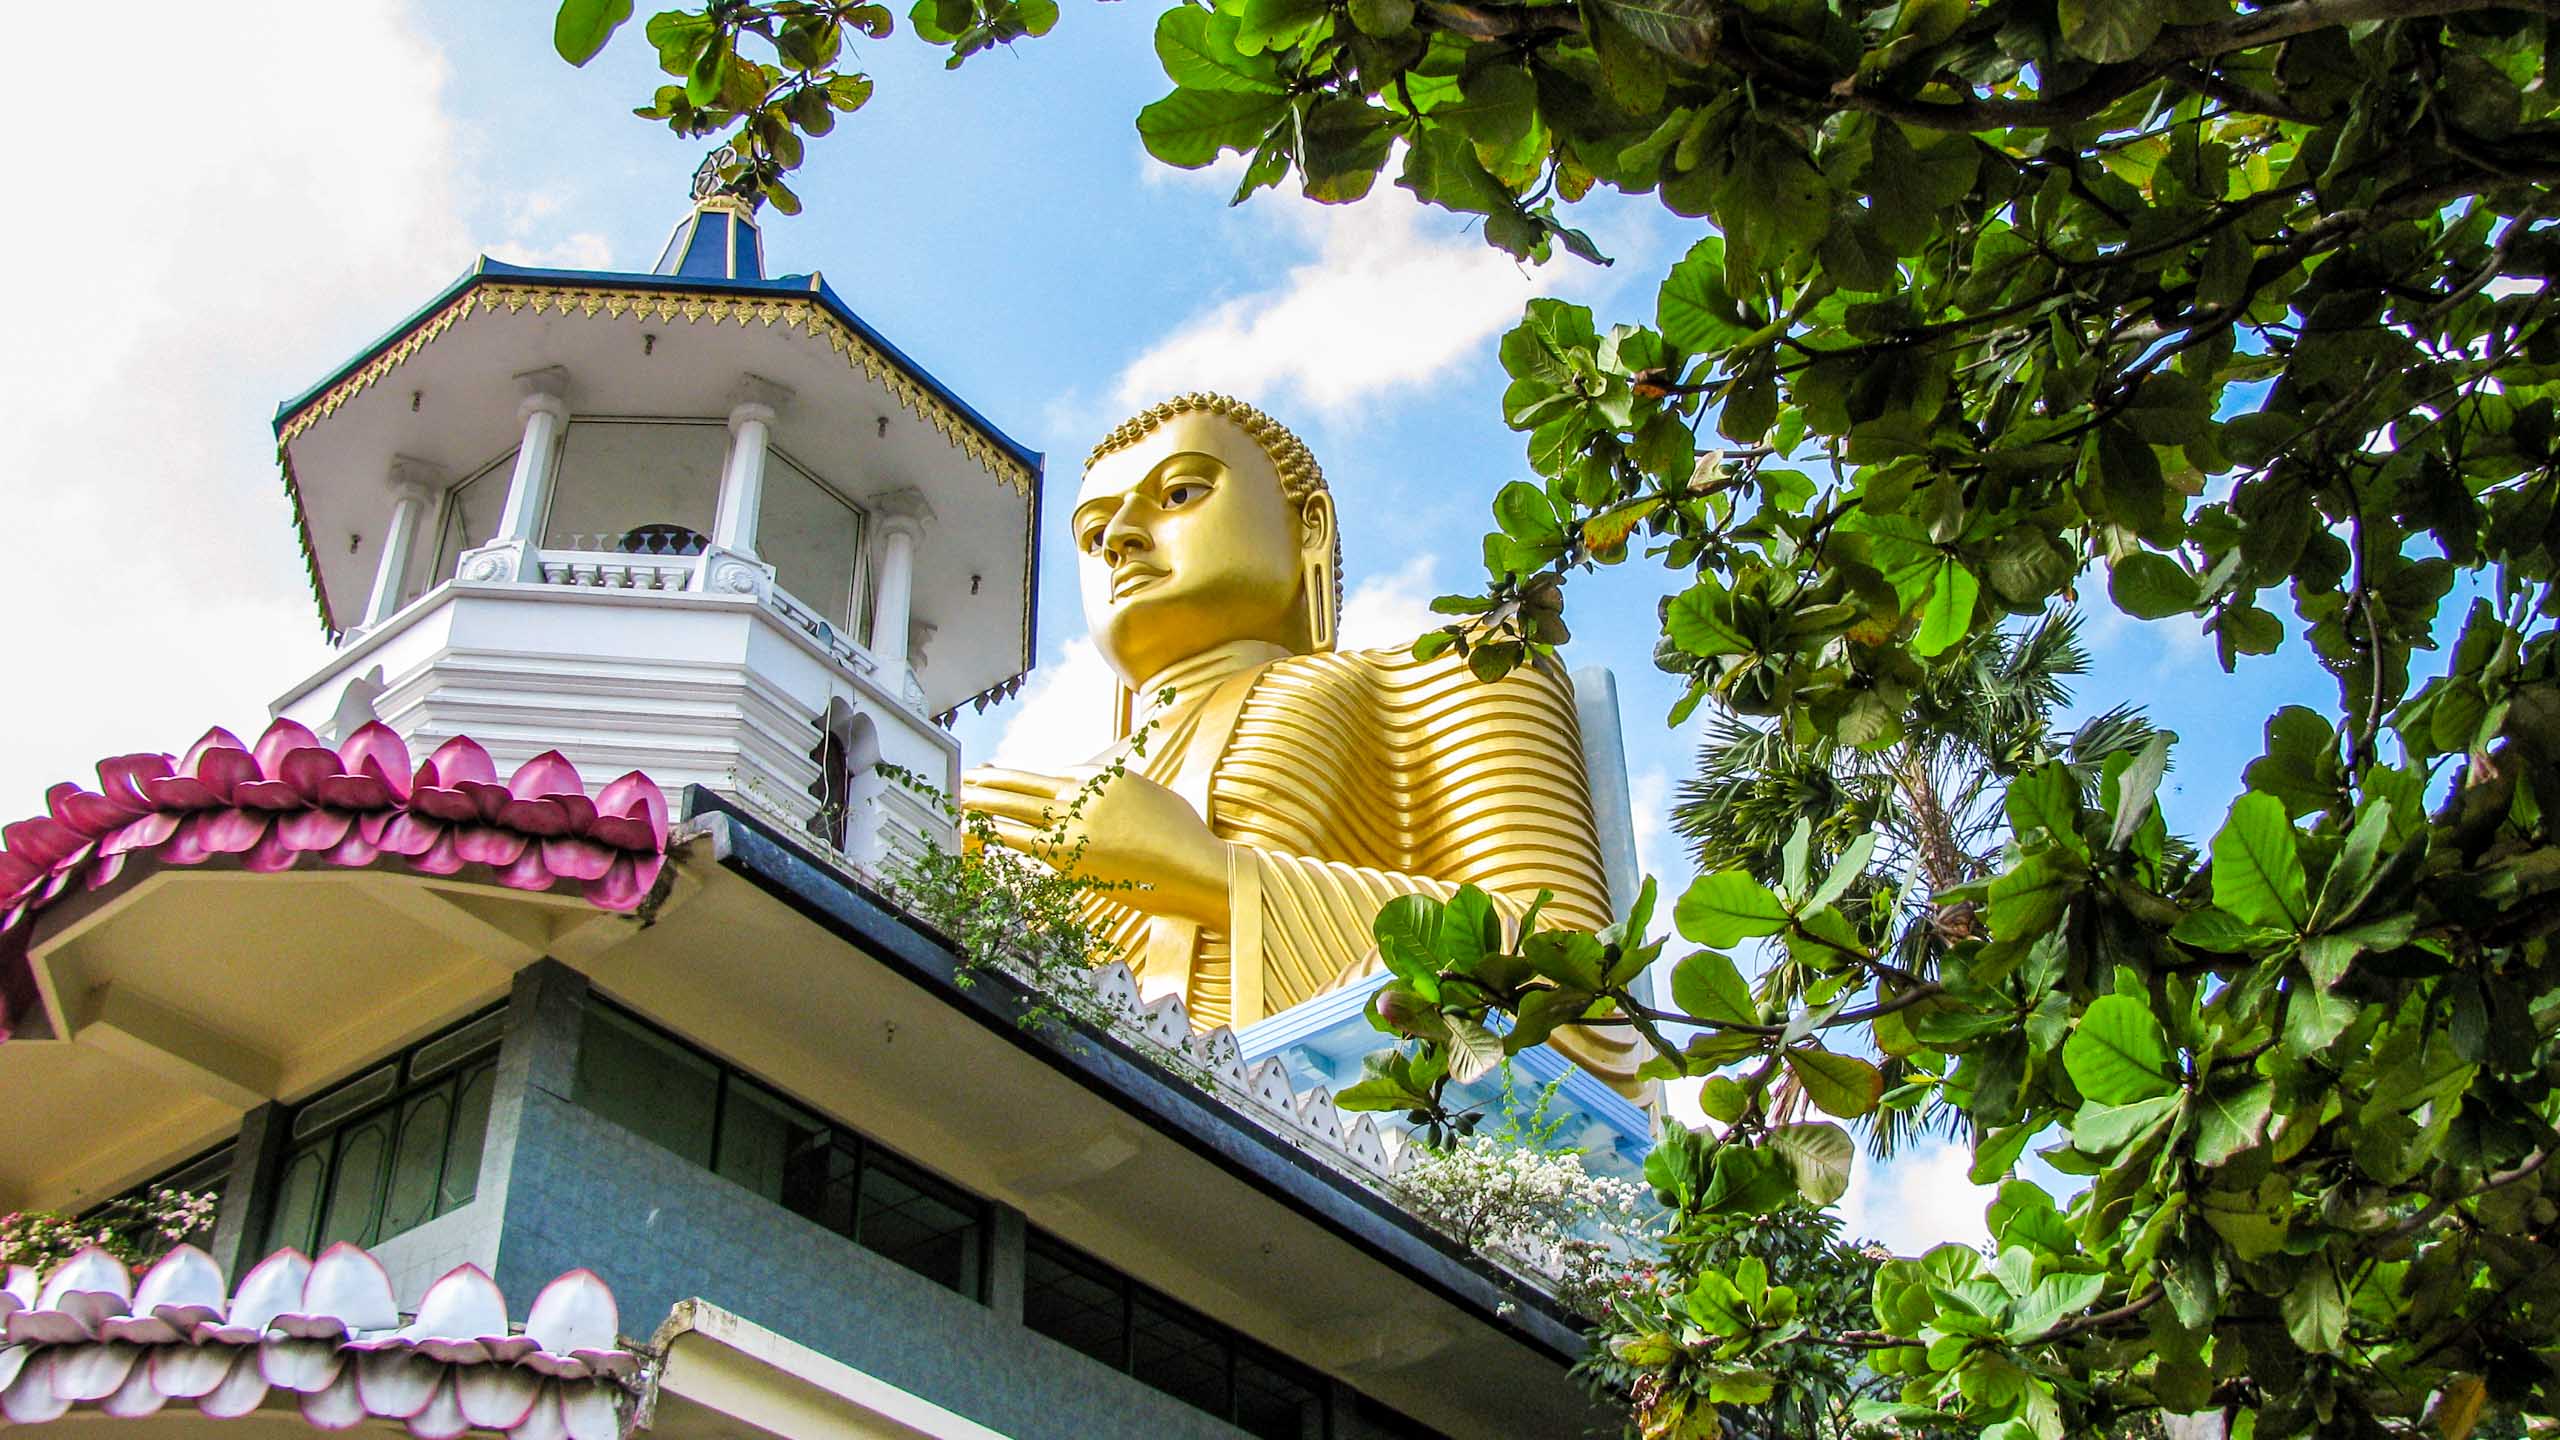 Large golden Buddha statue in Sri Lanka